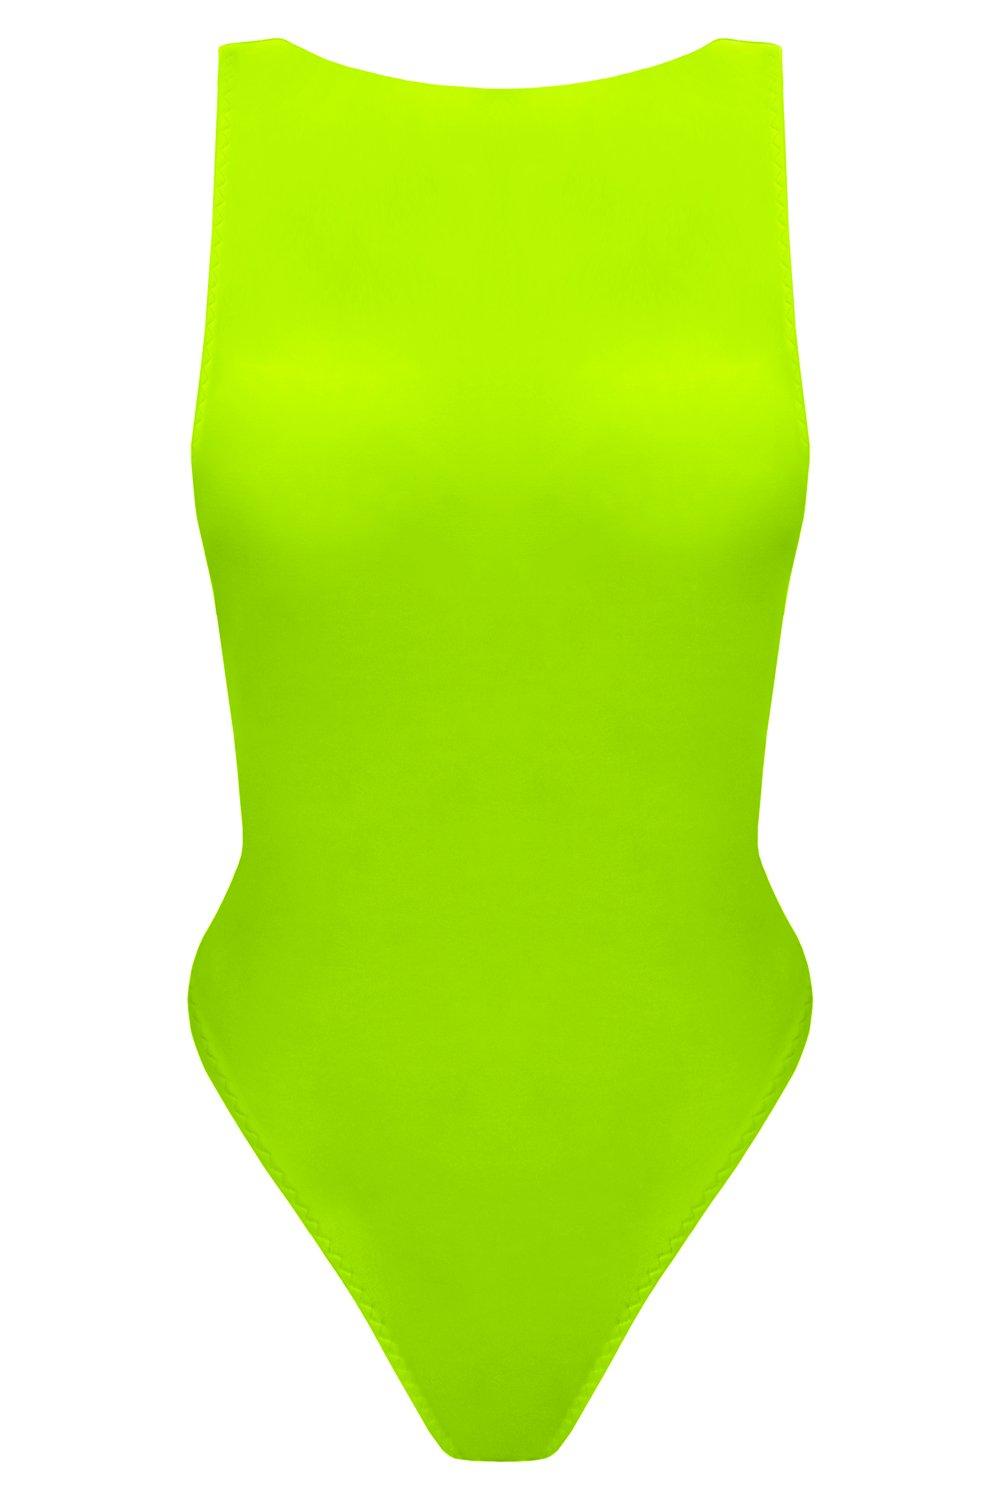 Vertex Greenery swimsuit - yesUndress